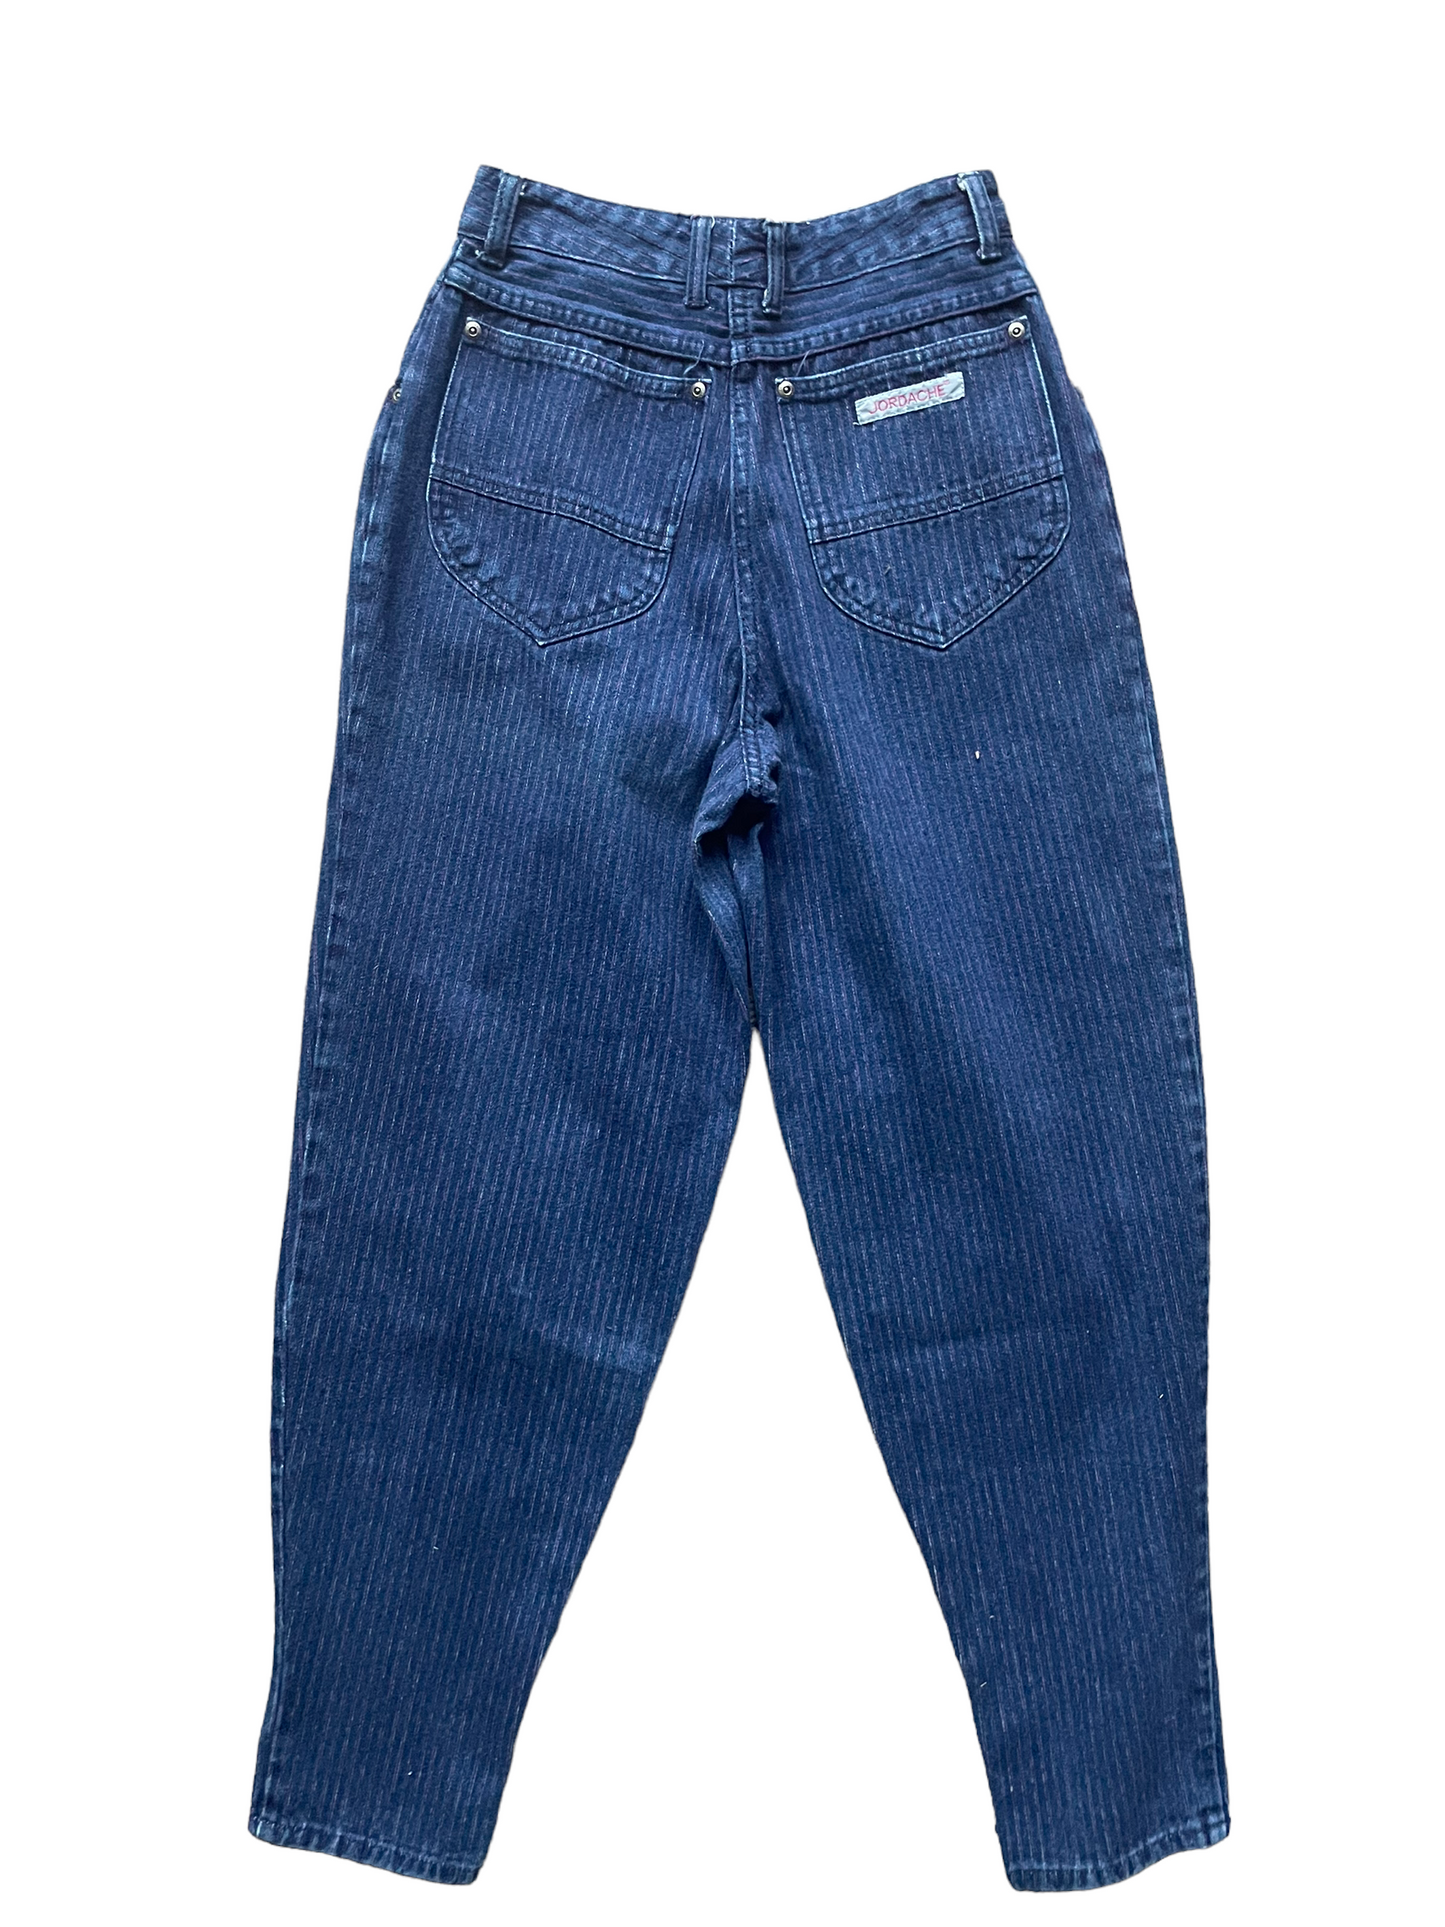 Full back view of Vintage 1980s Ladies Purple Pinstripe Jordache Jeans | Barn Owl Seattle | Vintage Ladies Jeans and Denim